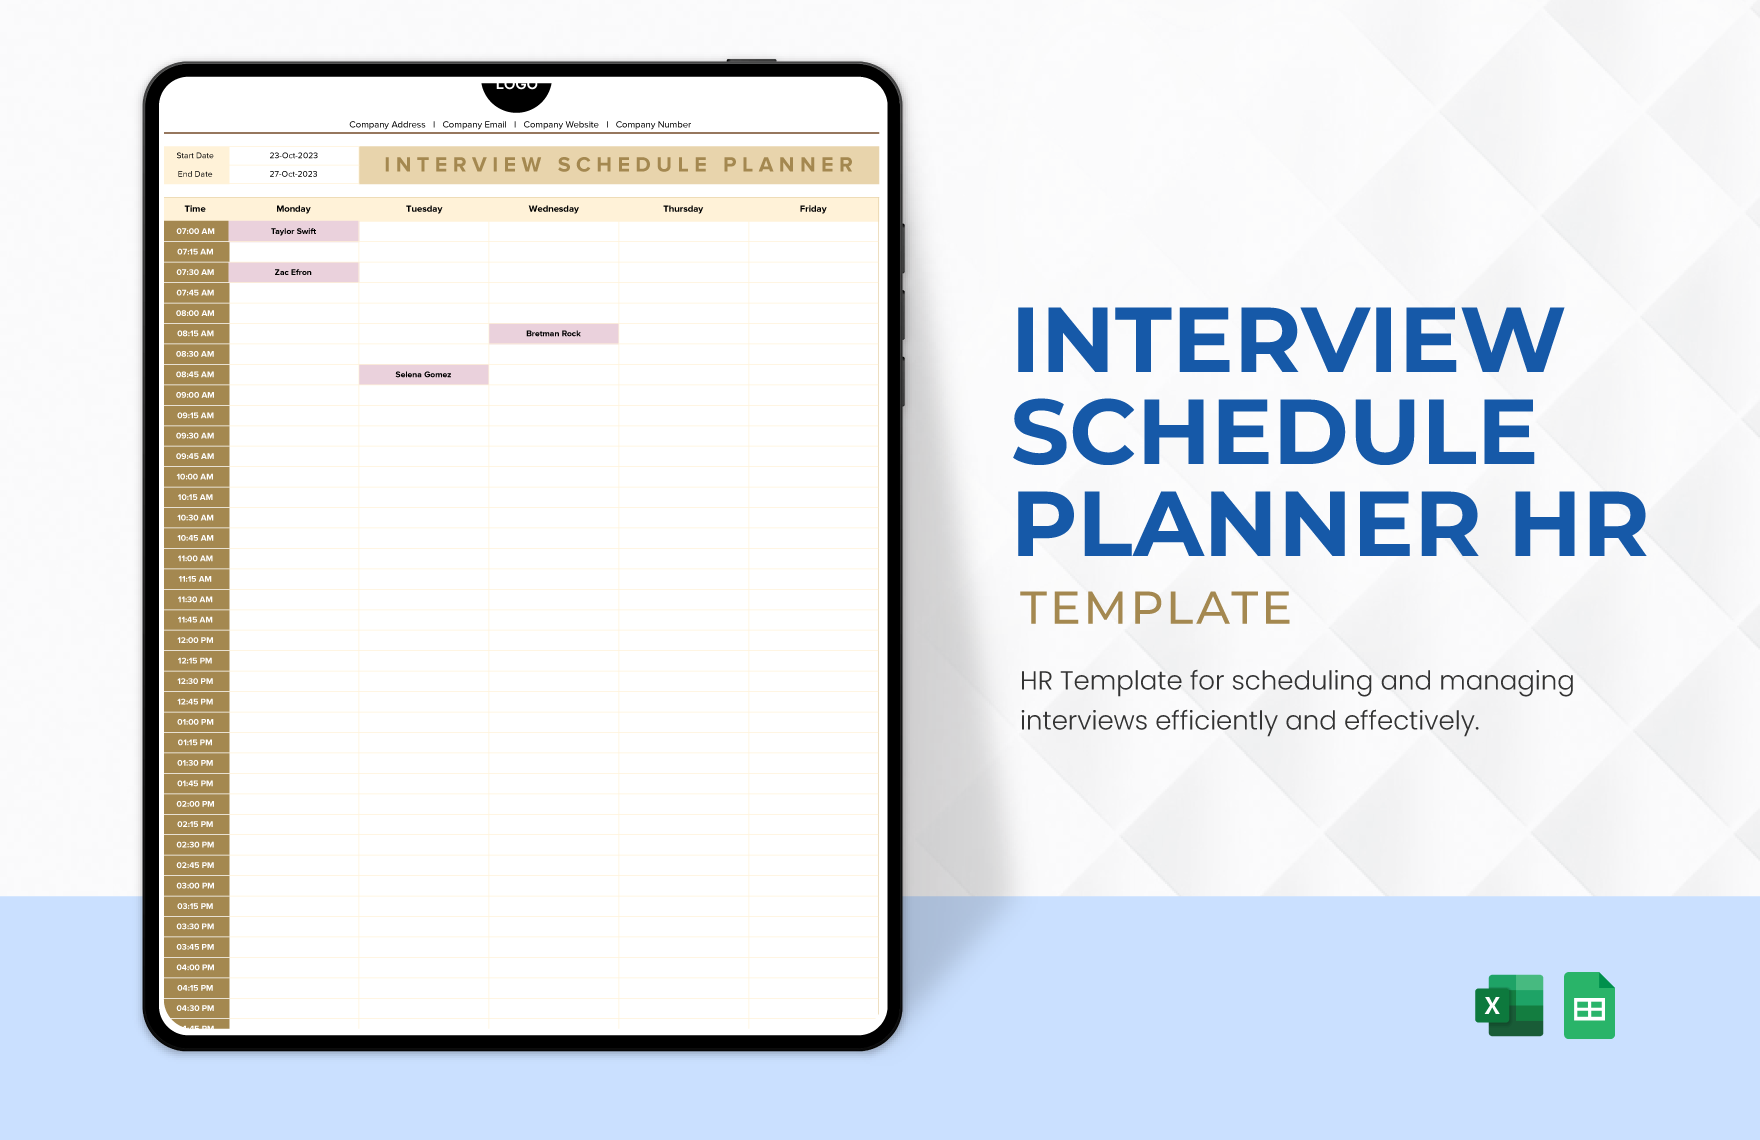 Interview Schedule Planner HR Template